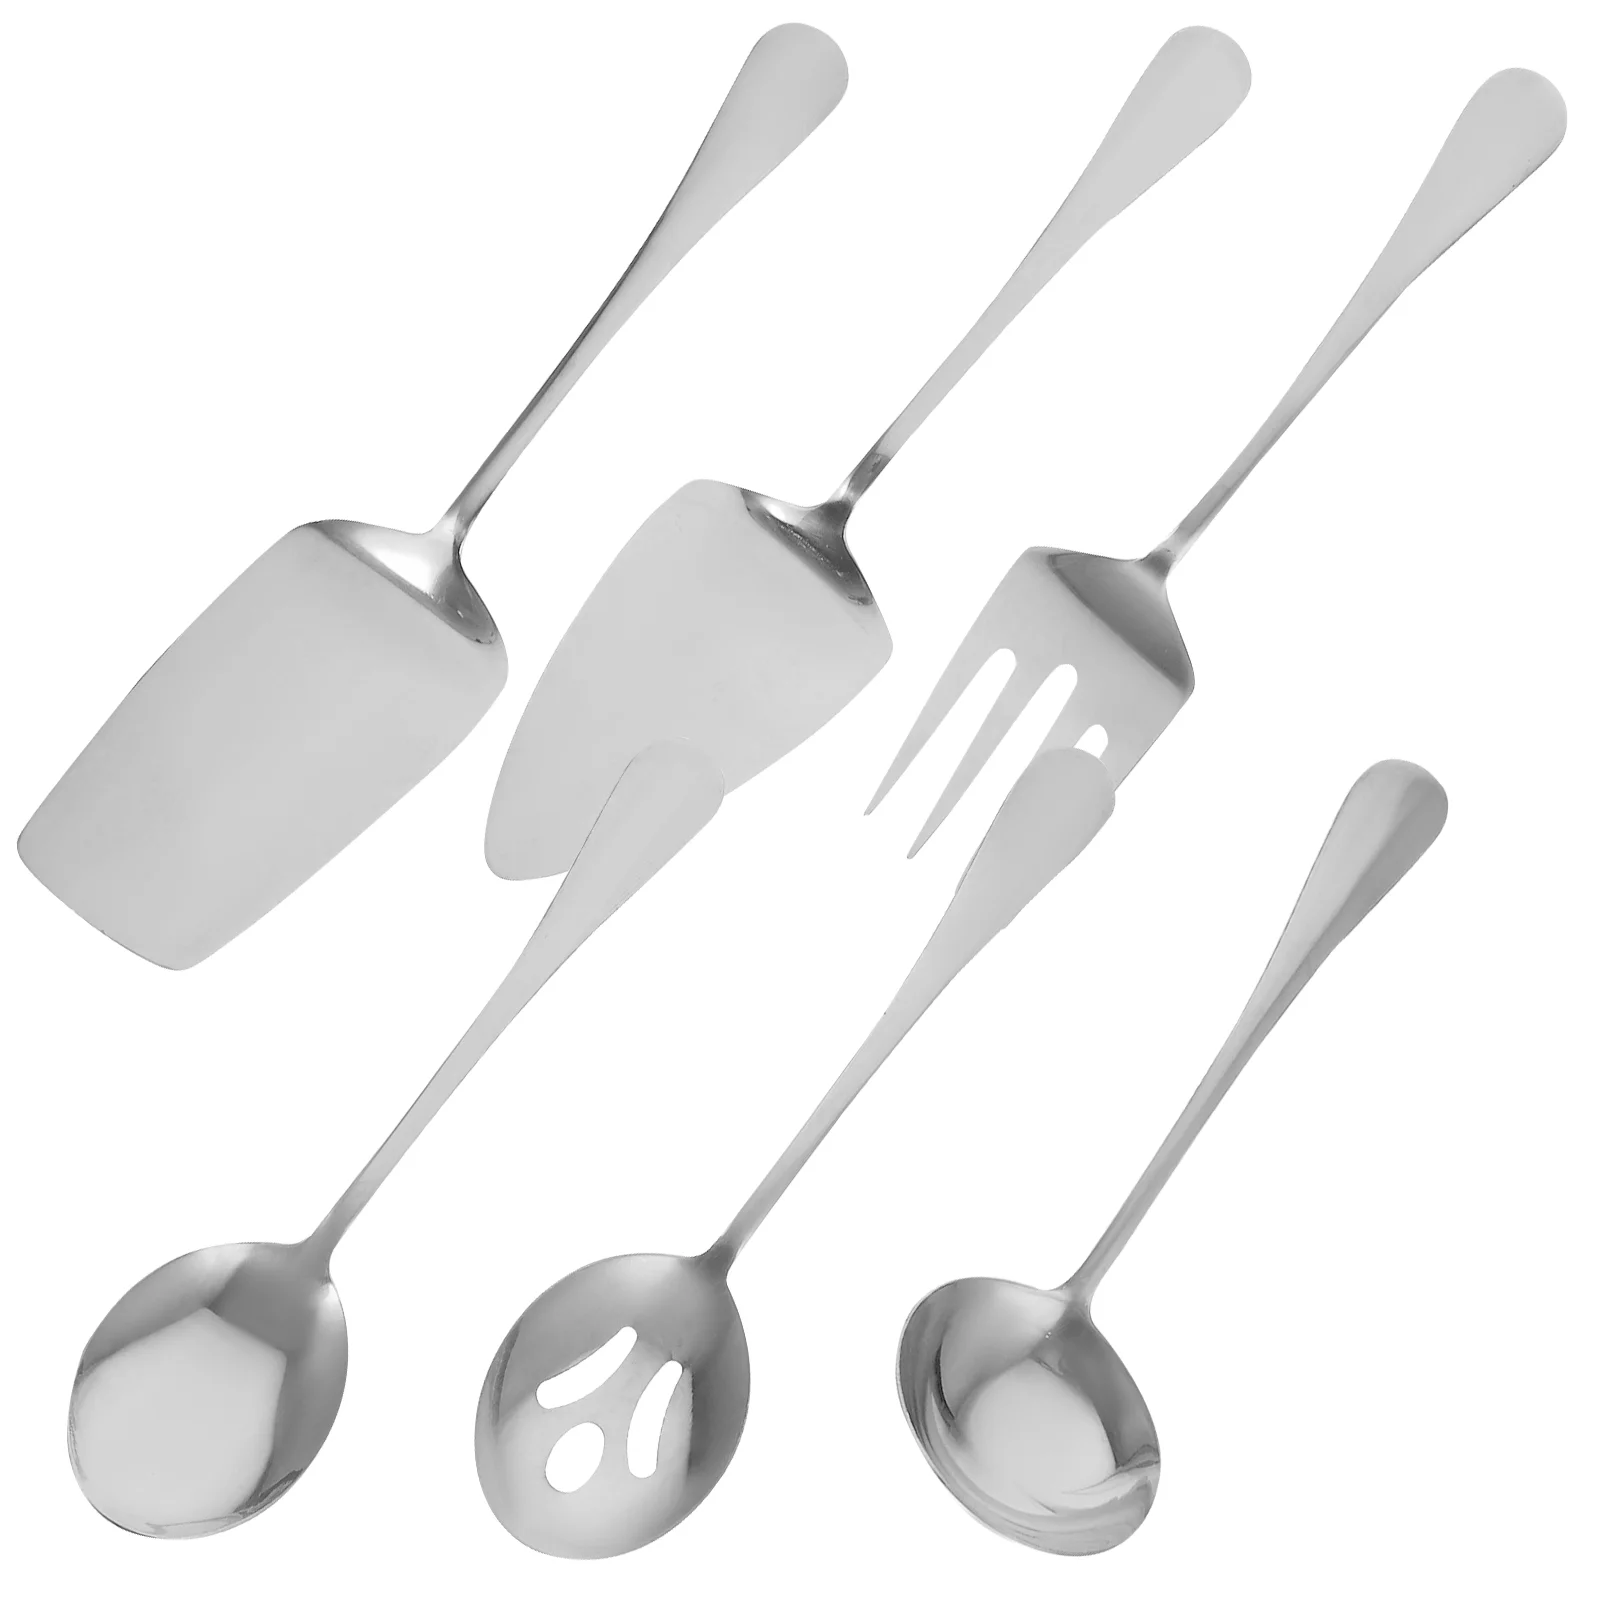 

1 Set of Stainless Steel Dinnerware Serving Cutlery Set Household Tableware Flatware Metal Utensil